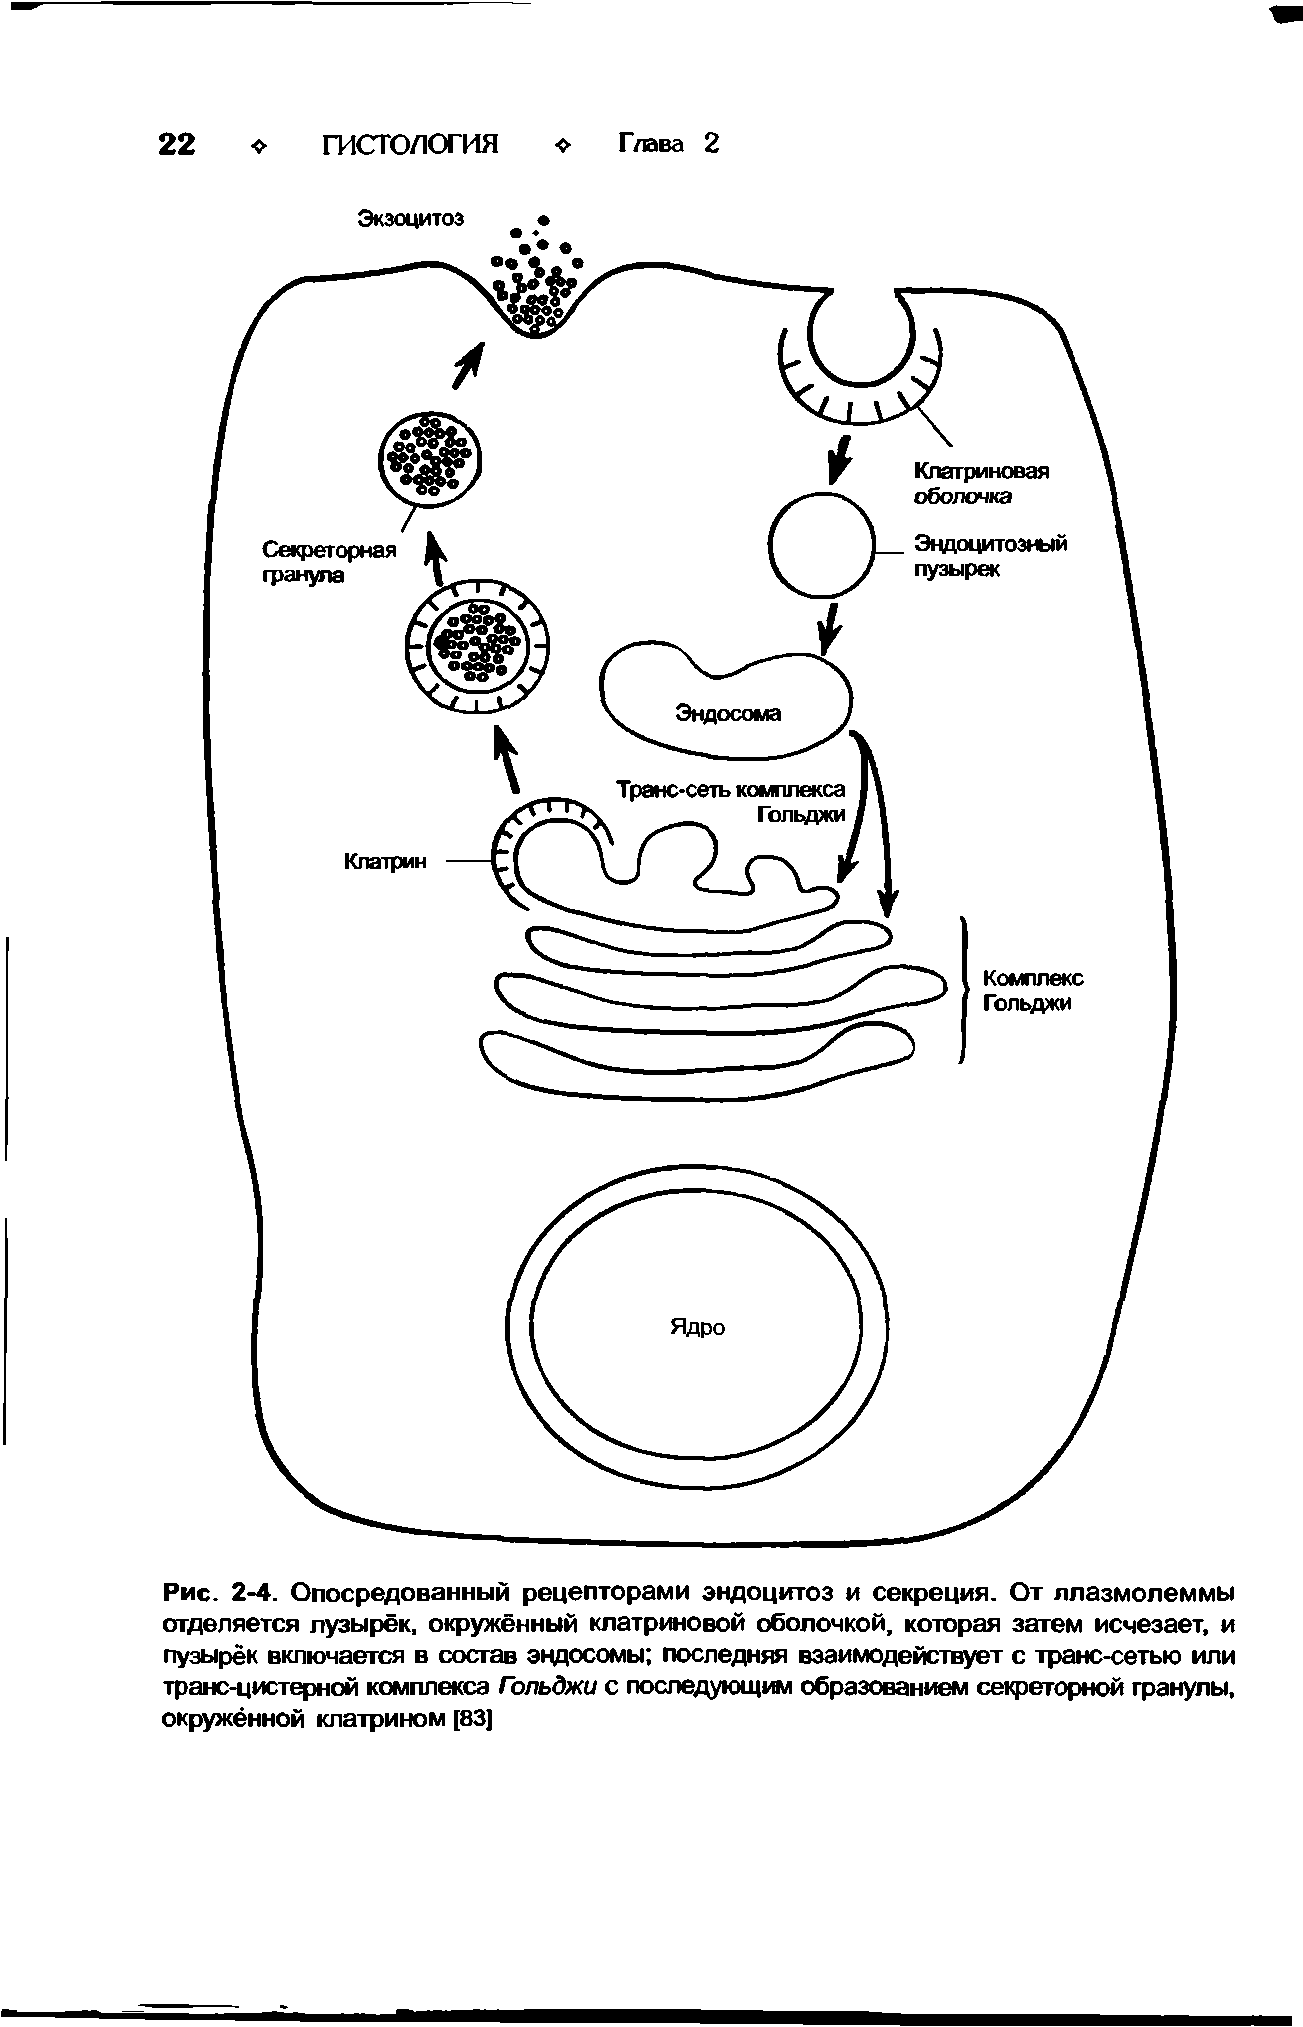 Рис. 2-4. Опосредованный рецепторами эндоцитоз и секреция. От ллазмолеммы отделяется пузырёк, окружённый клатрютовой оболочкой, которая затем исчезает, и пузырек включается в состав эндосомы последняя взаимодействует с транс-сетью или транс-цистерной комплекса Гольджи с последующа образованием секреторной гранулы, окружённой клатрином [83]...